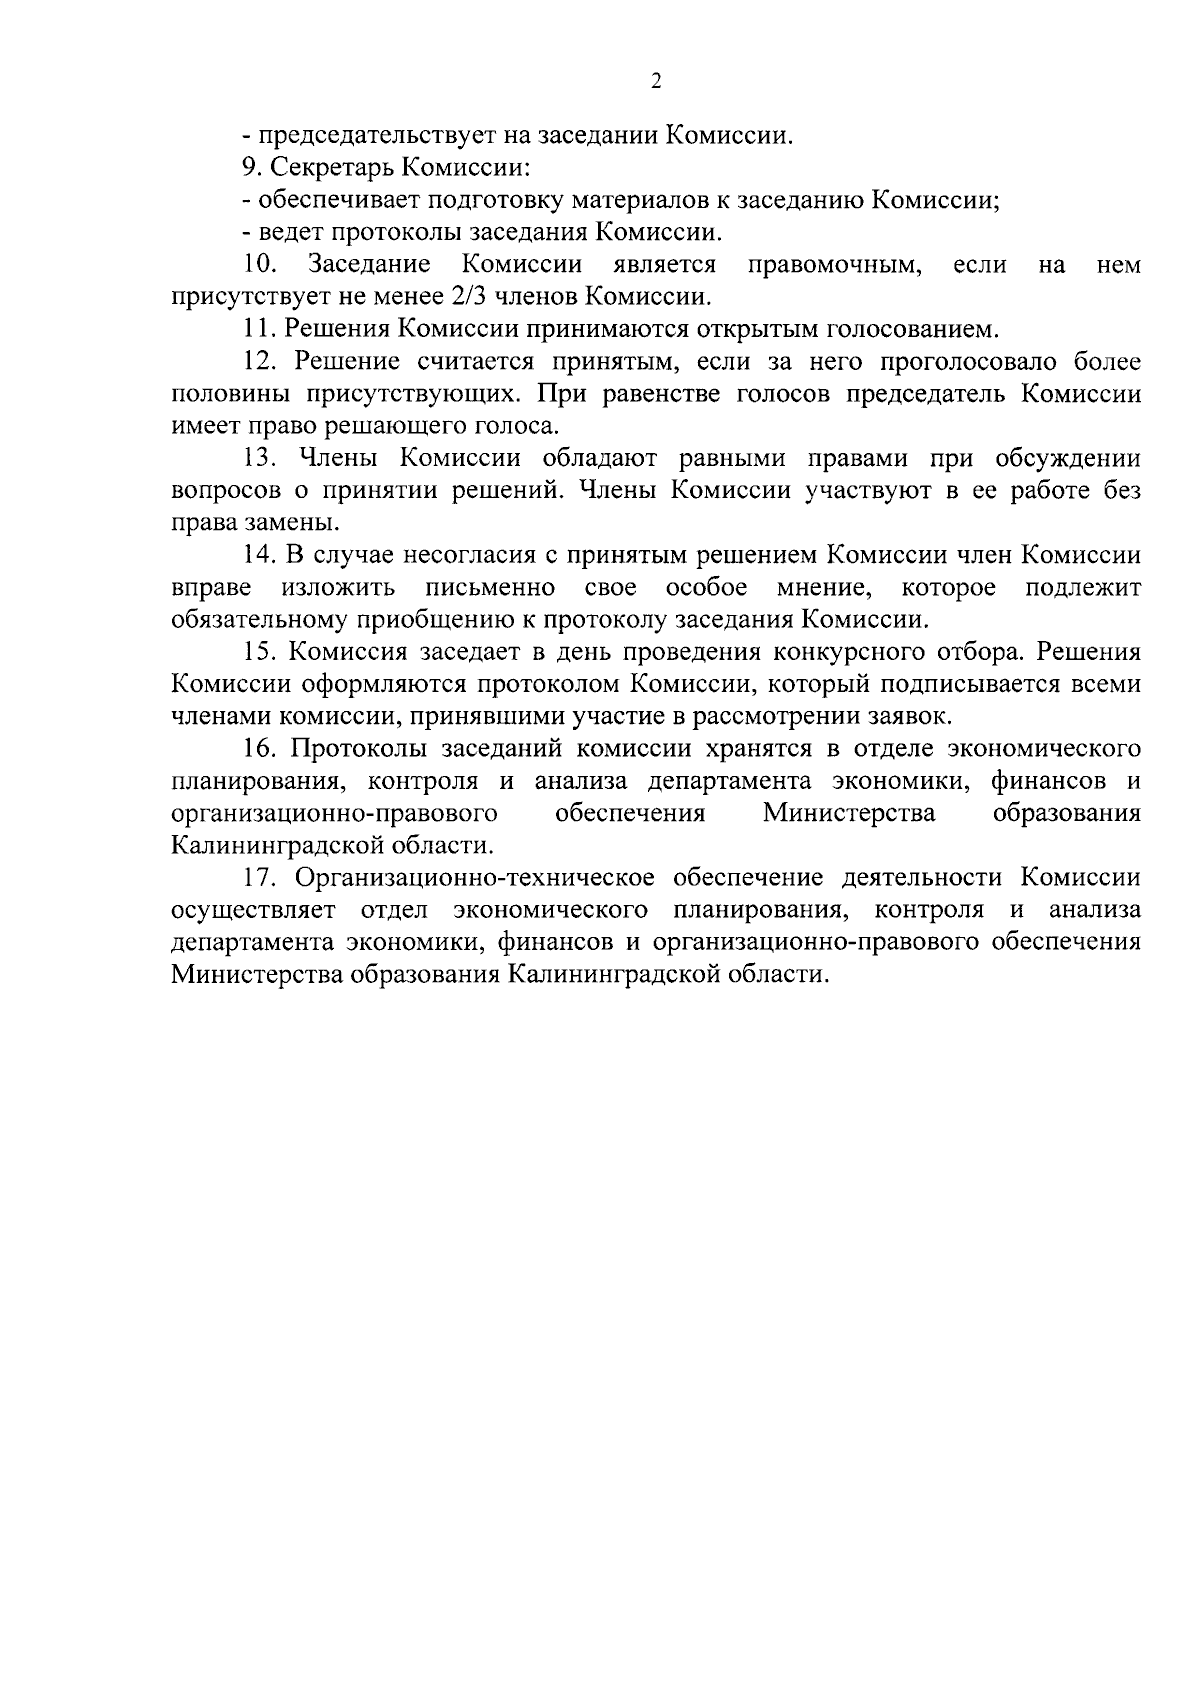 Приказ Министерства образования Калининградской области от 25.08.2023 № 1313/1 ∙ Официальное опубликование правовых актов